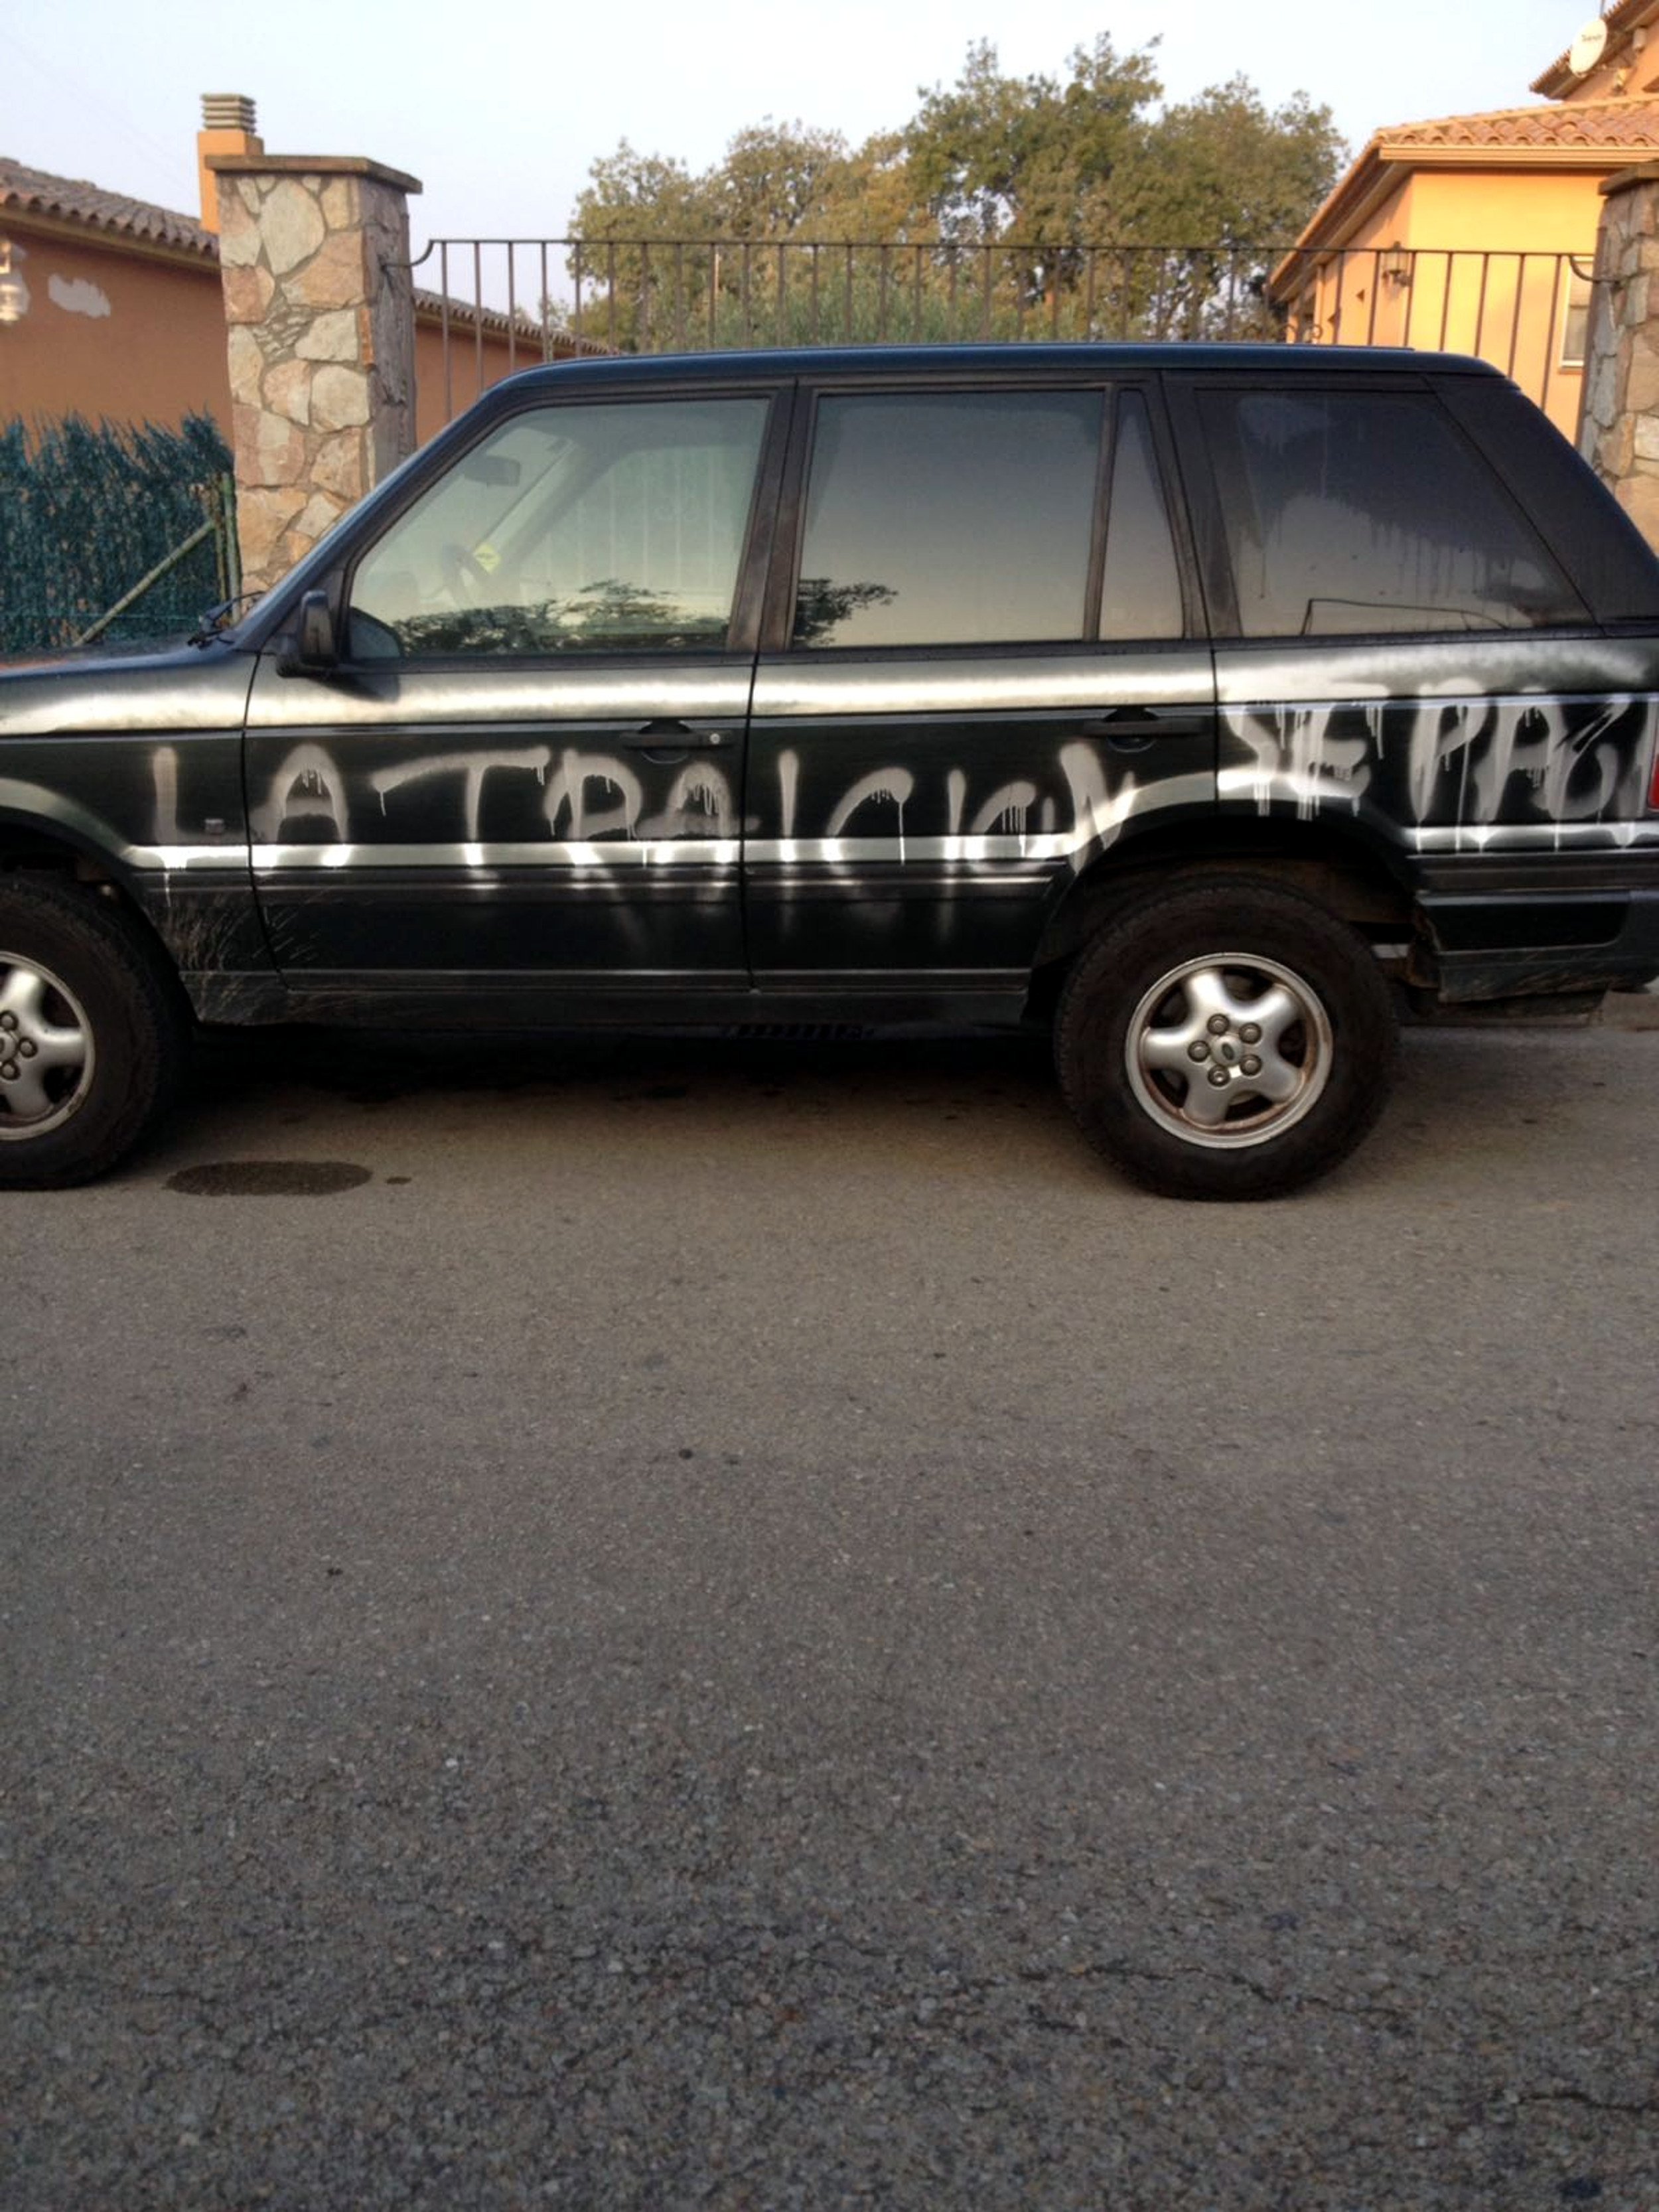 Pintan amenazas en el coche del alcalde de Vall-llobrega por haber permitido el referéndum